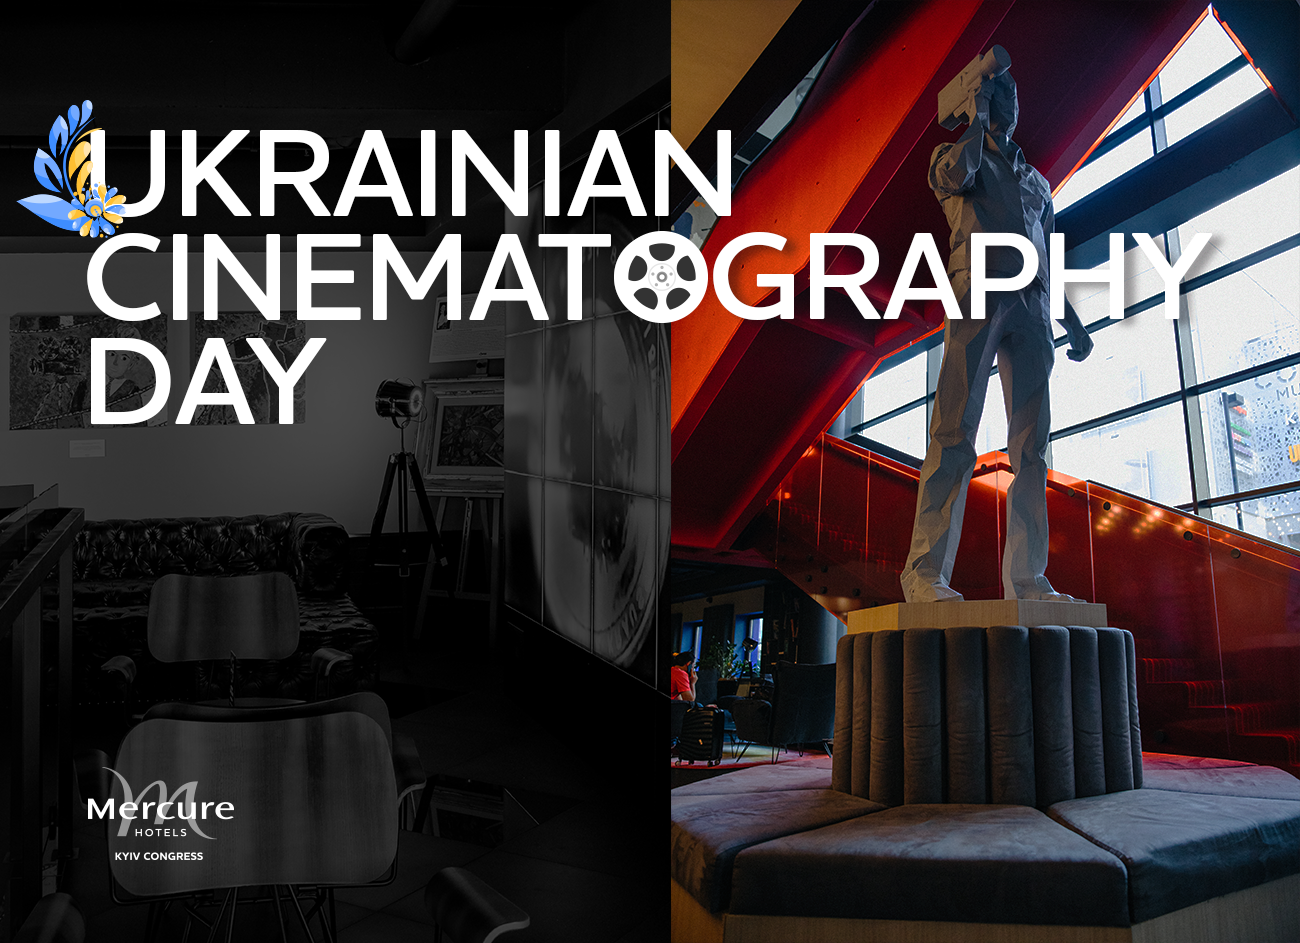 We celebrate Ukrainian cinematography day